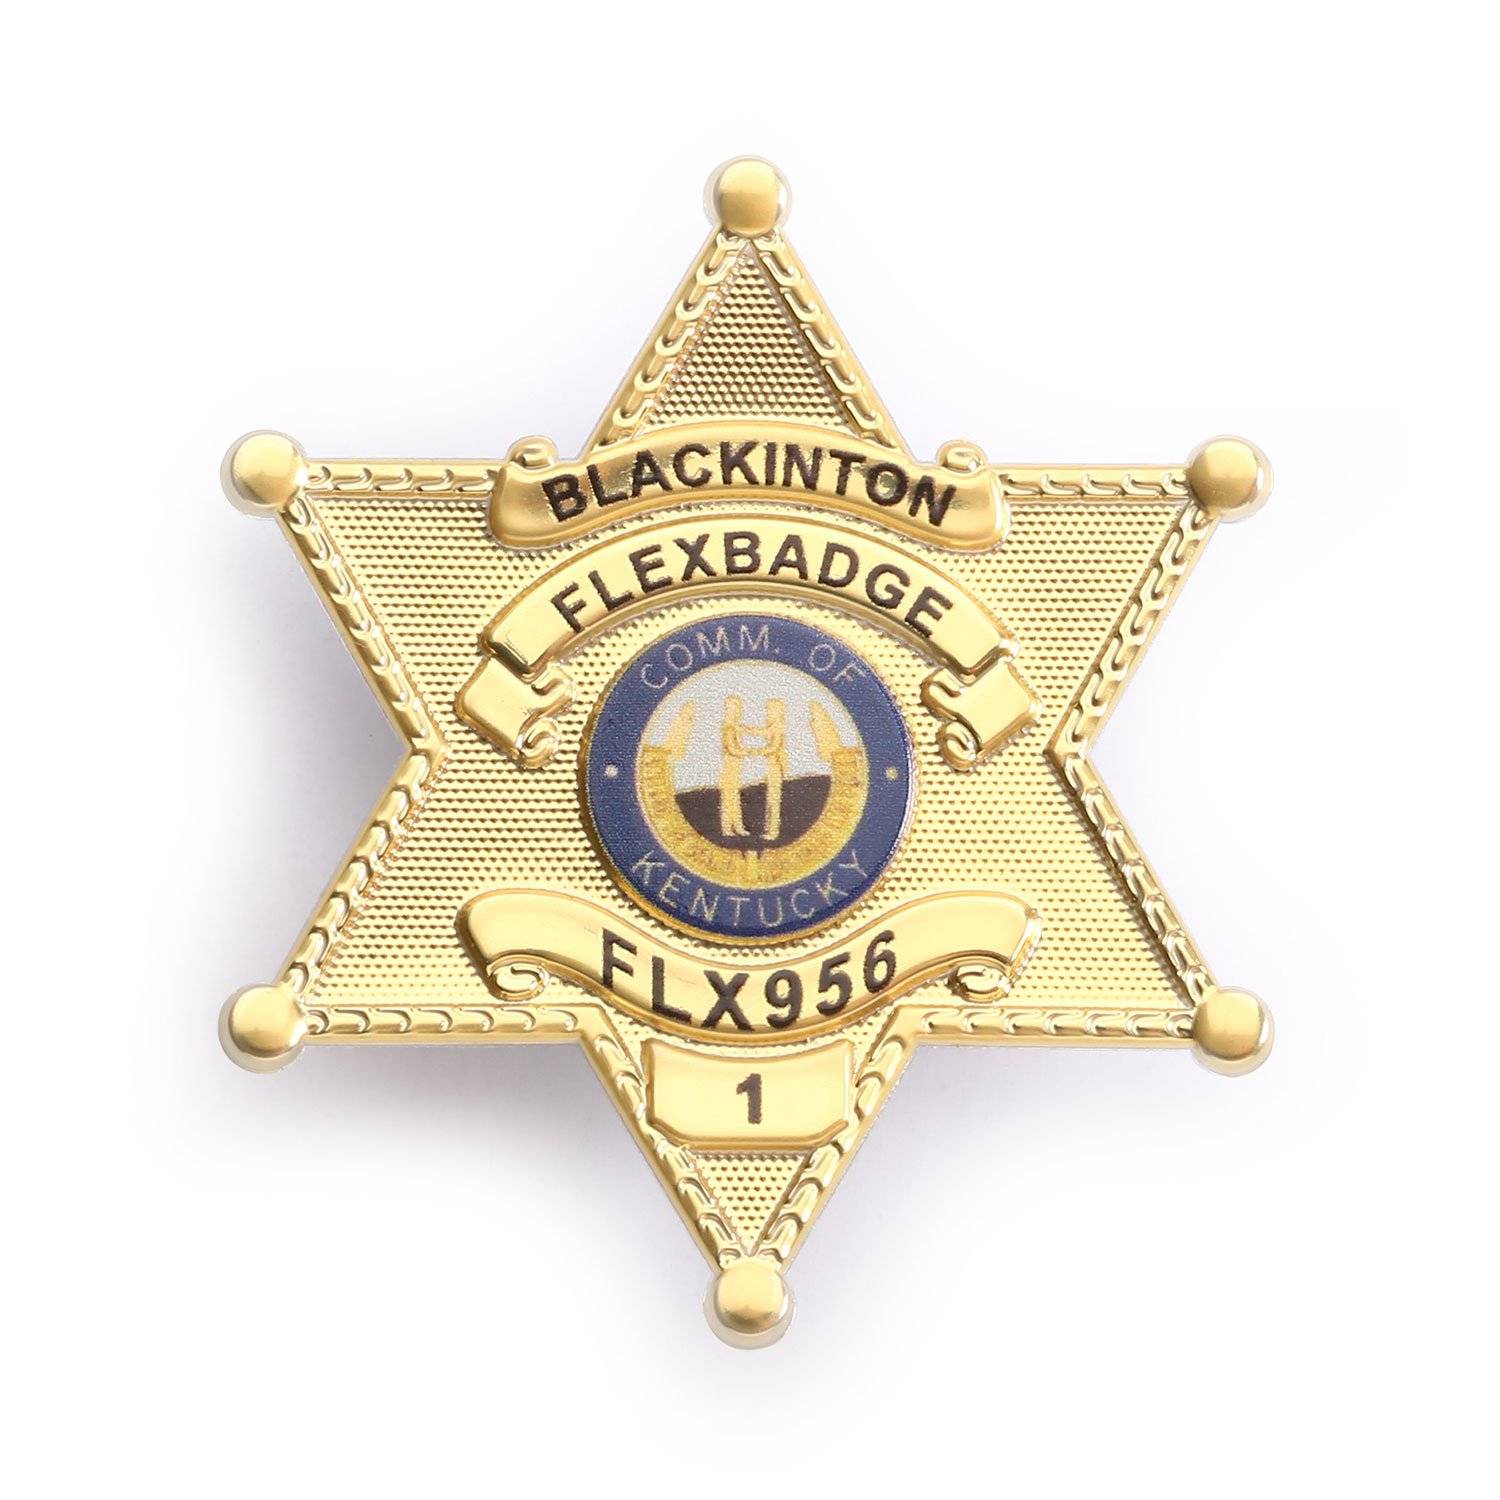 BLACKINTON FLEXBADGE FLX956 6-POINT STAR